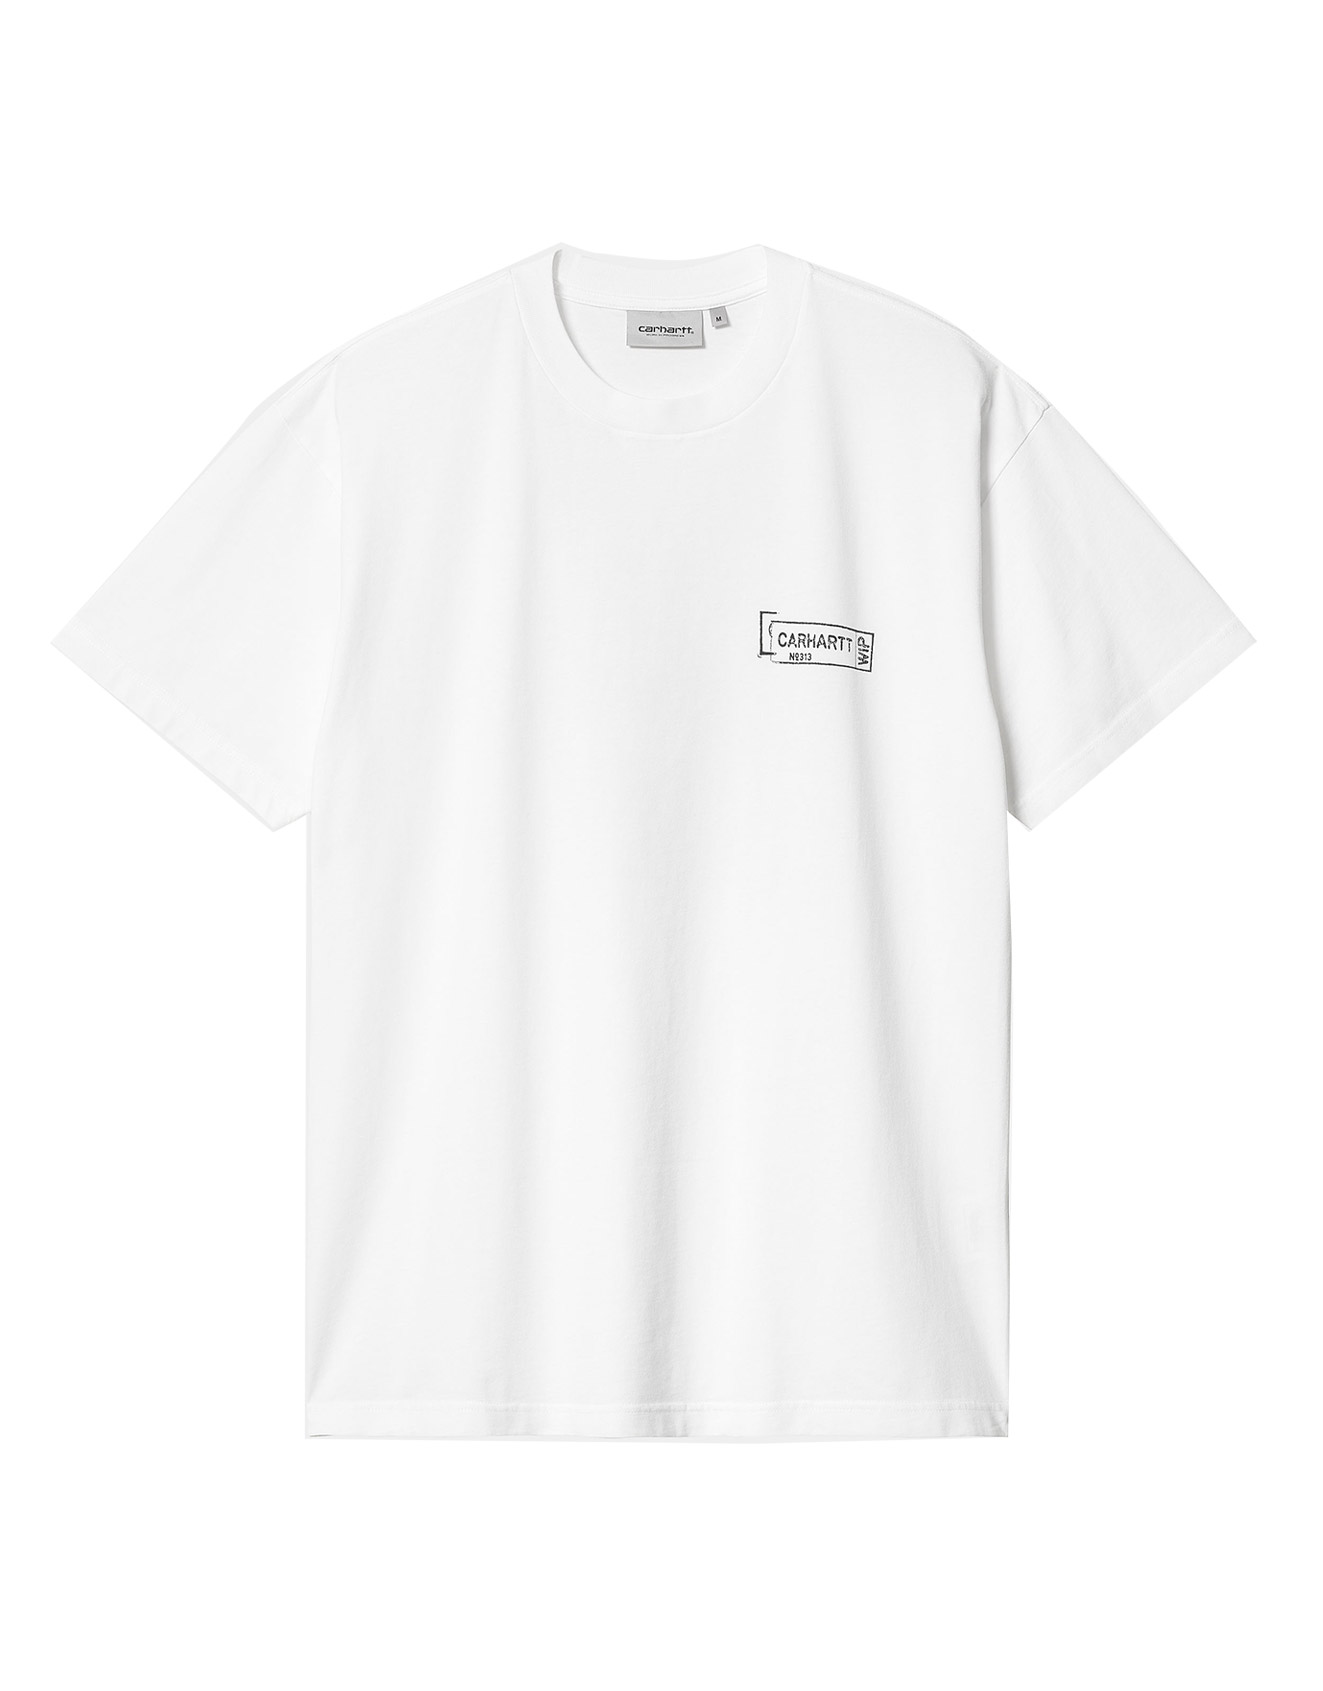 Carhartt WIP – S/S Stamp T-Shirt